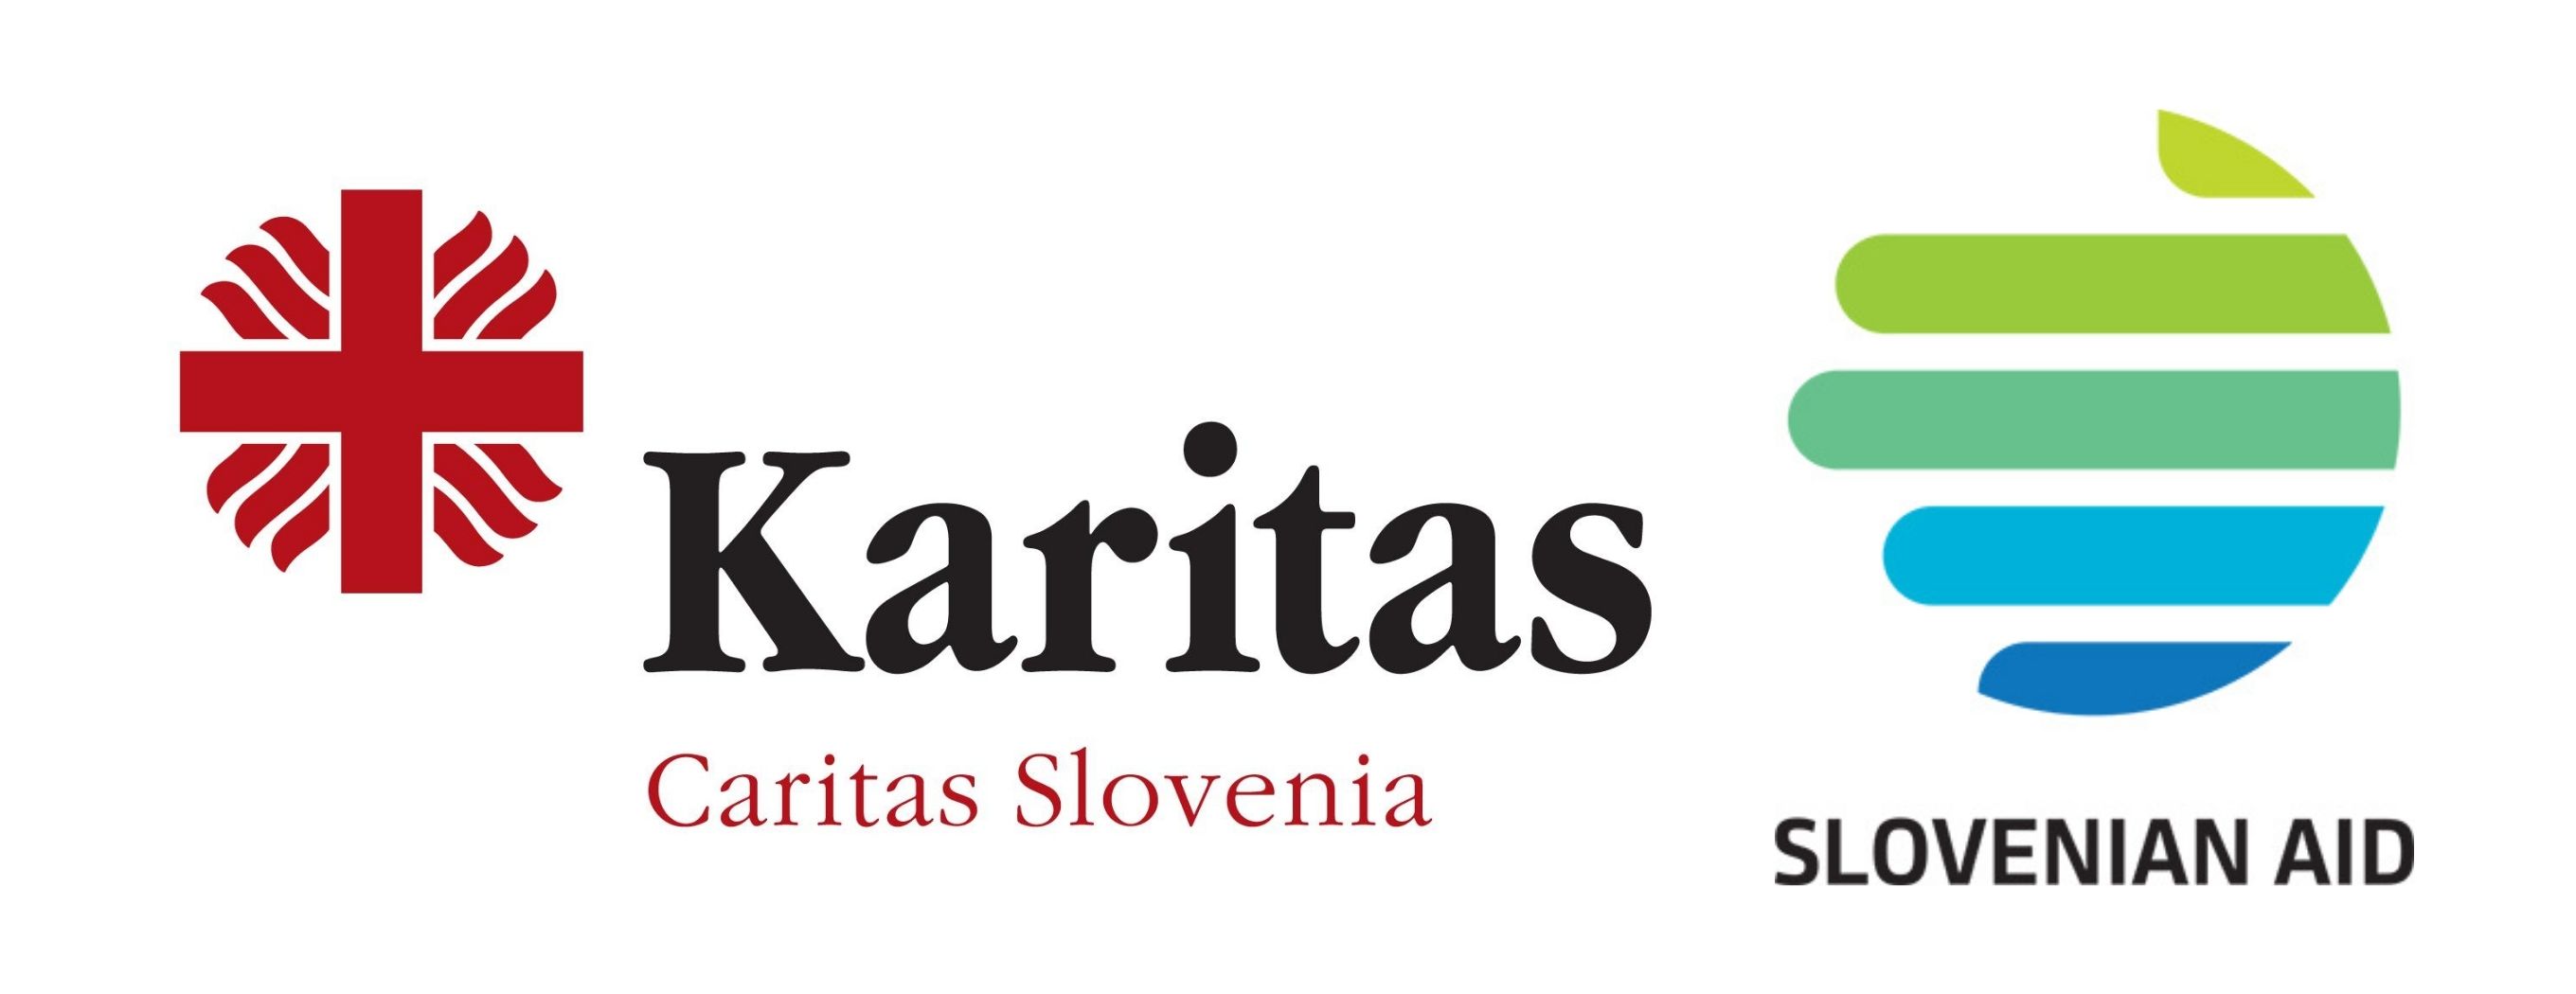 Огромная благодарность Каритас Словения и Министерству иностранных дел Словении